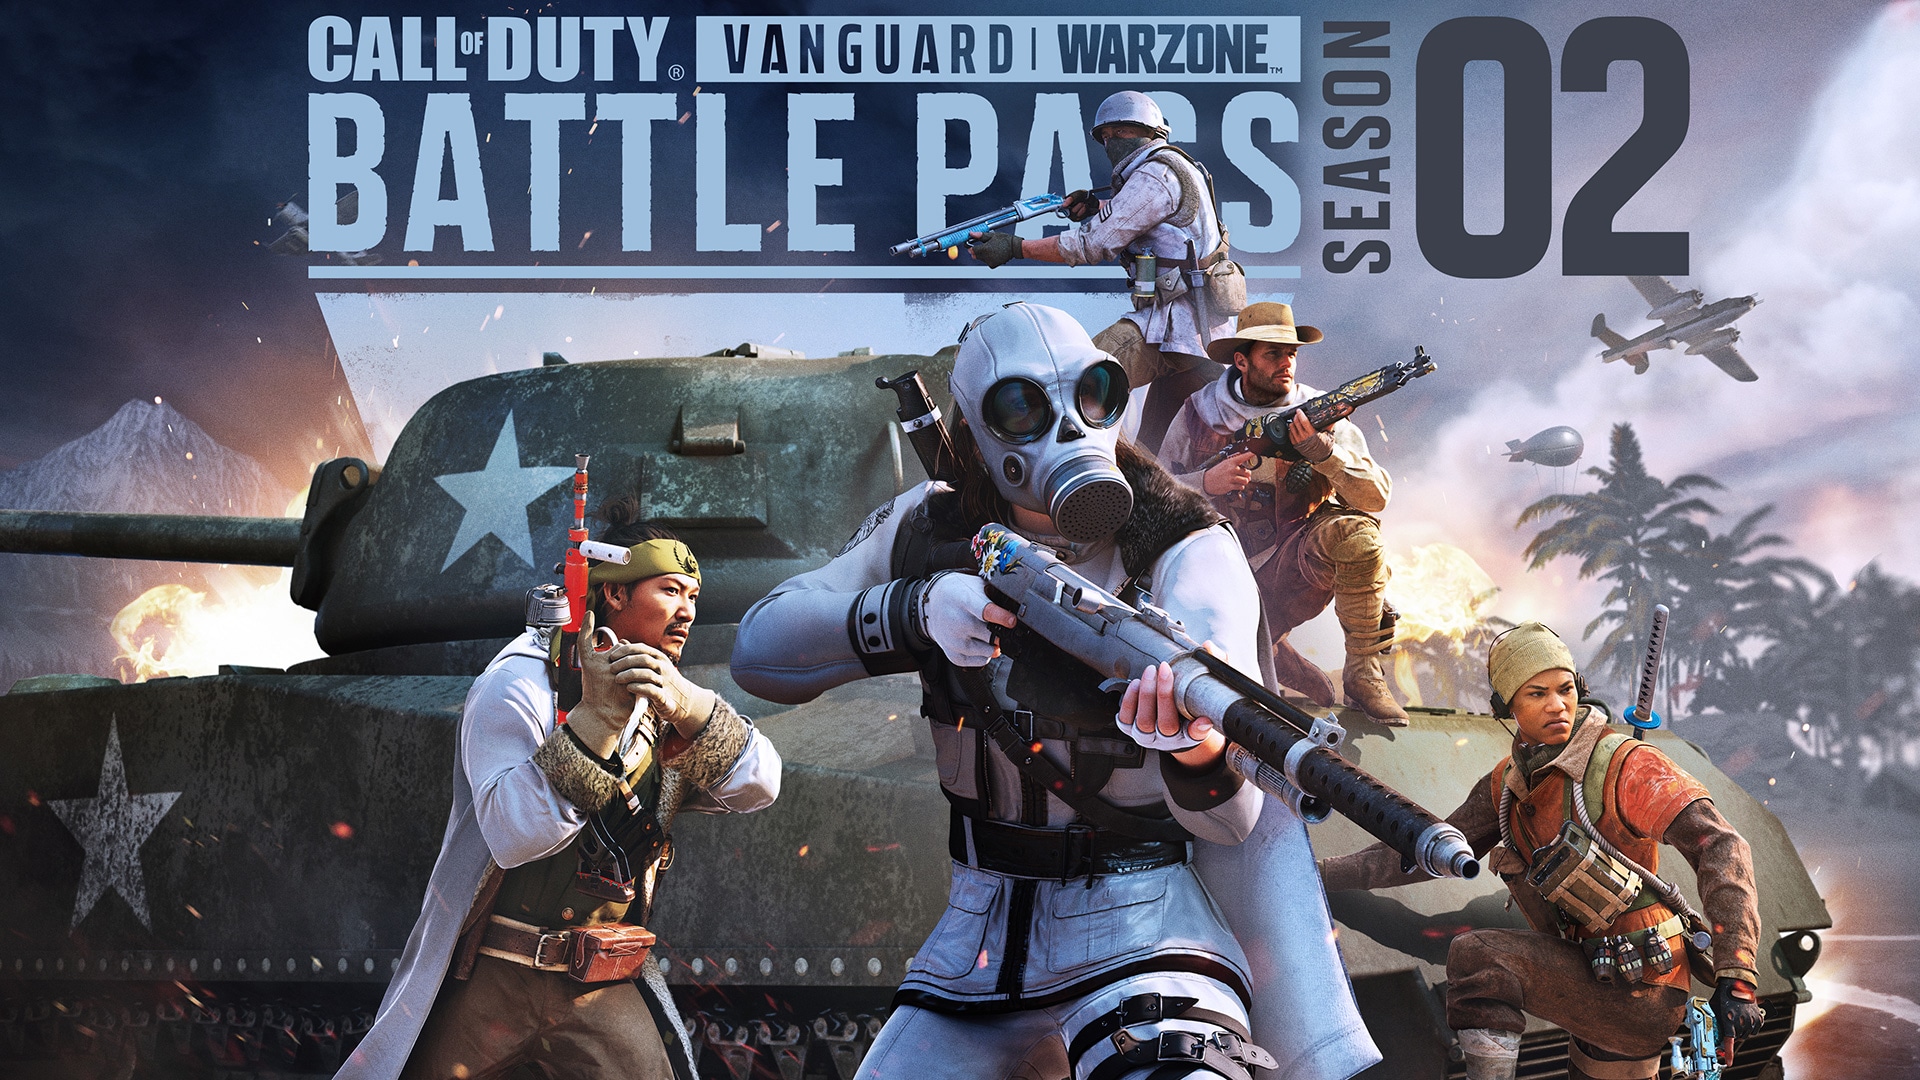 Uzupełnijcie zapasy dzięki Karnetowi Bojowemu i zestawom sezonu drugiego Call of Duty®: Vanguard i Warzone™